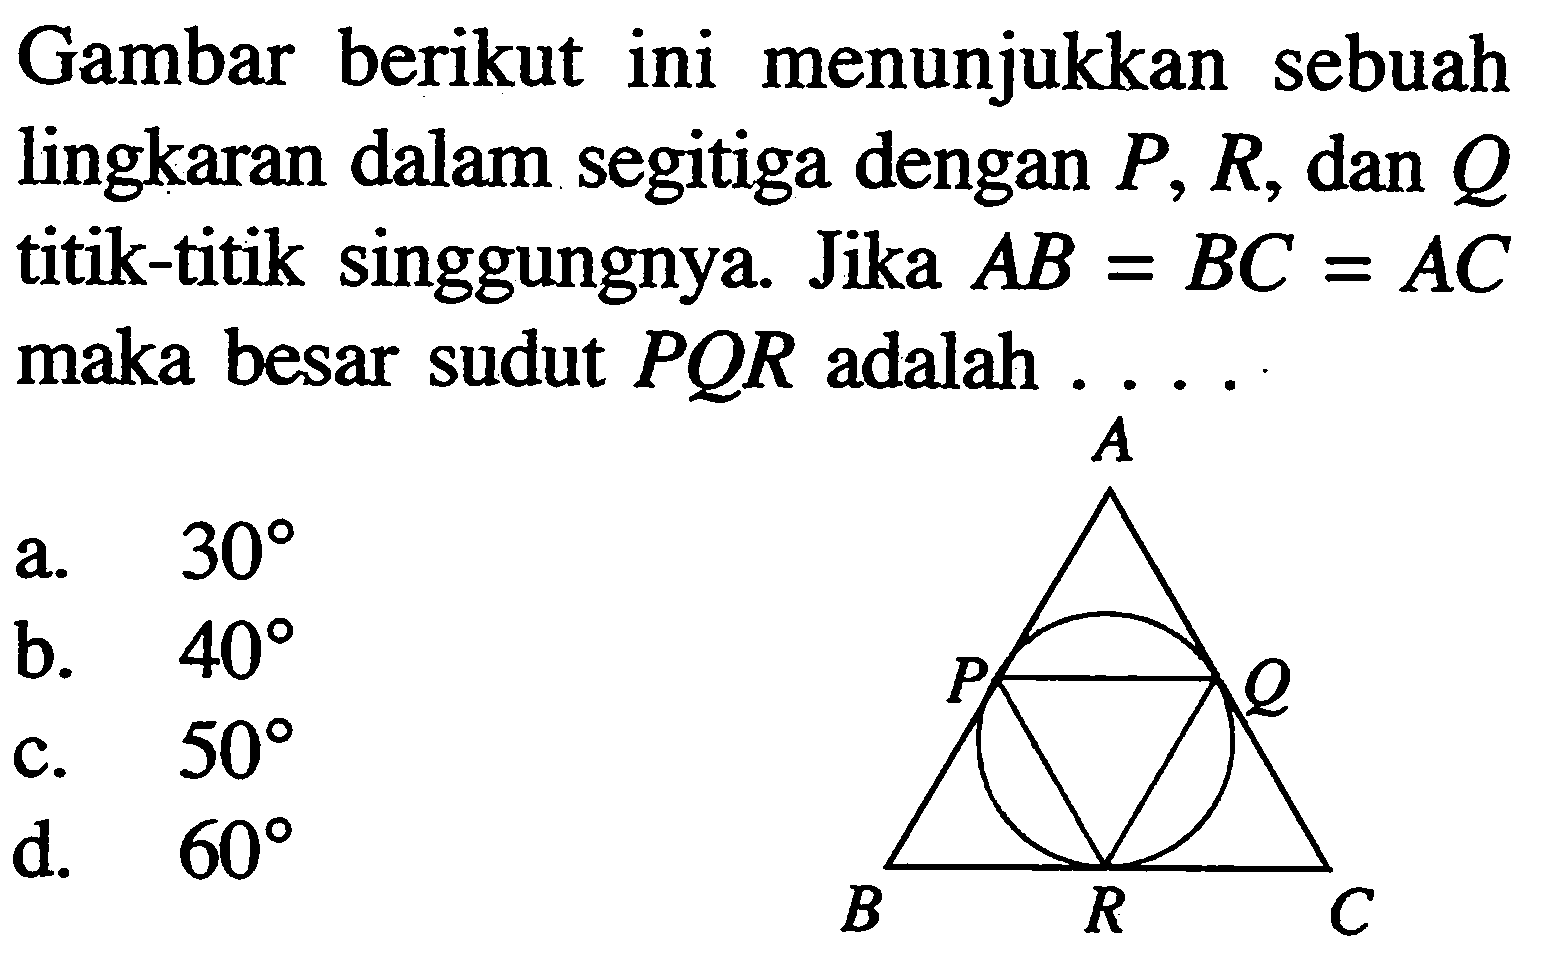 Gambar berikut ini menunjukkan sebuah lingkaran dalam segitiga dengan P, R, dan Q titik-titik singgungnya. Jika AB=BC=AC maka besar sudut PQR adalah .... A P Q B R C 